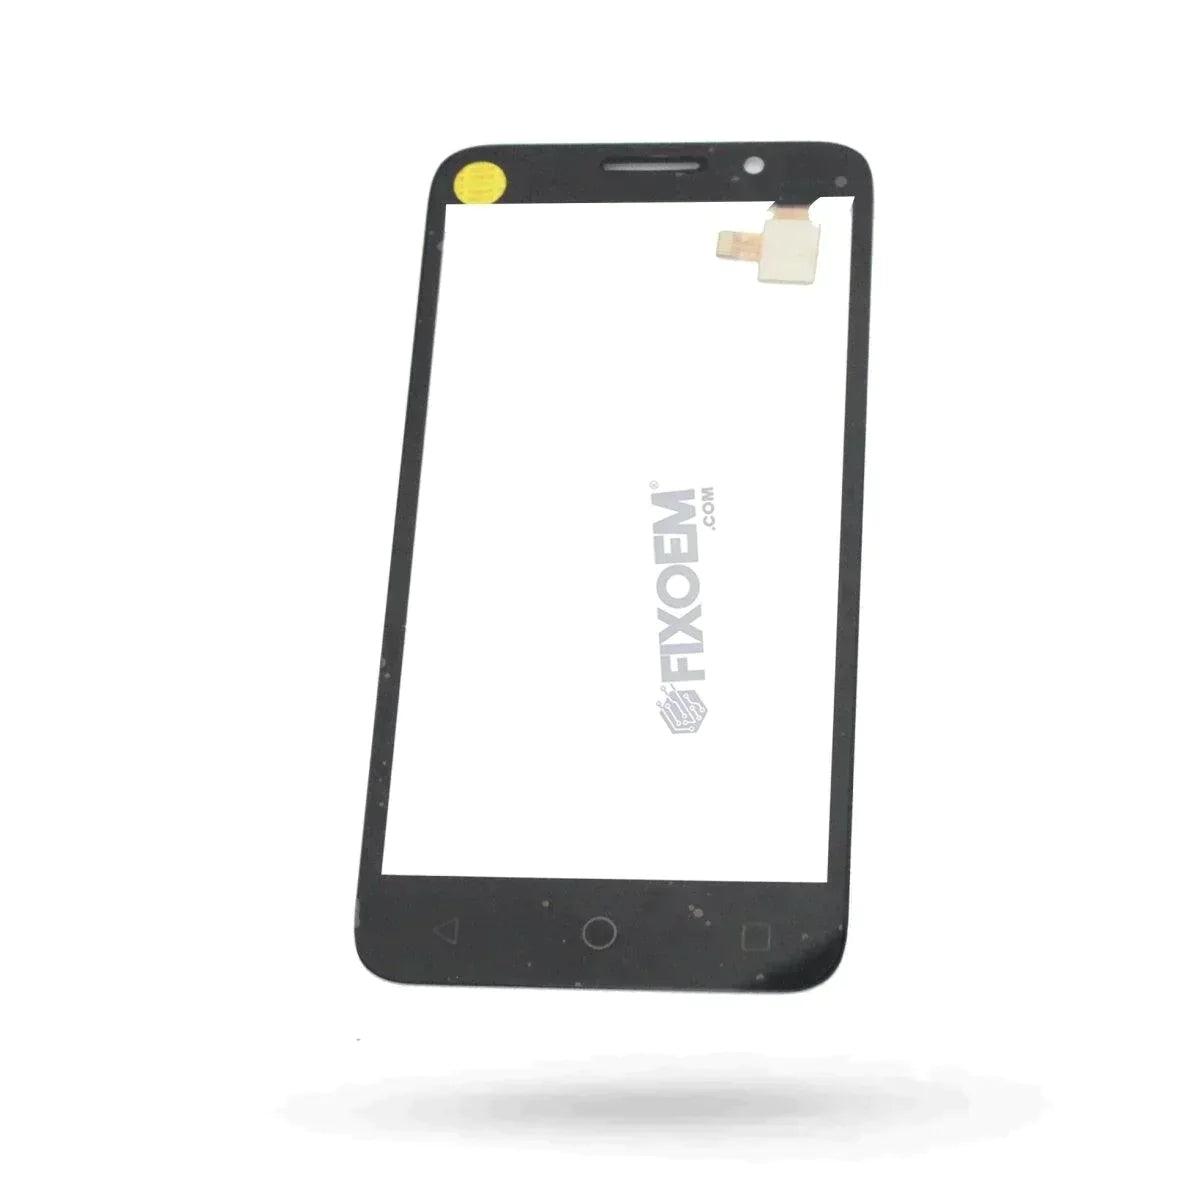 Touch Alcatel Pop 3 (5) 5015A a solo $ 90.00 Refaccion y puestos celulares, refurbish y microelectronica.- FixOEM